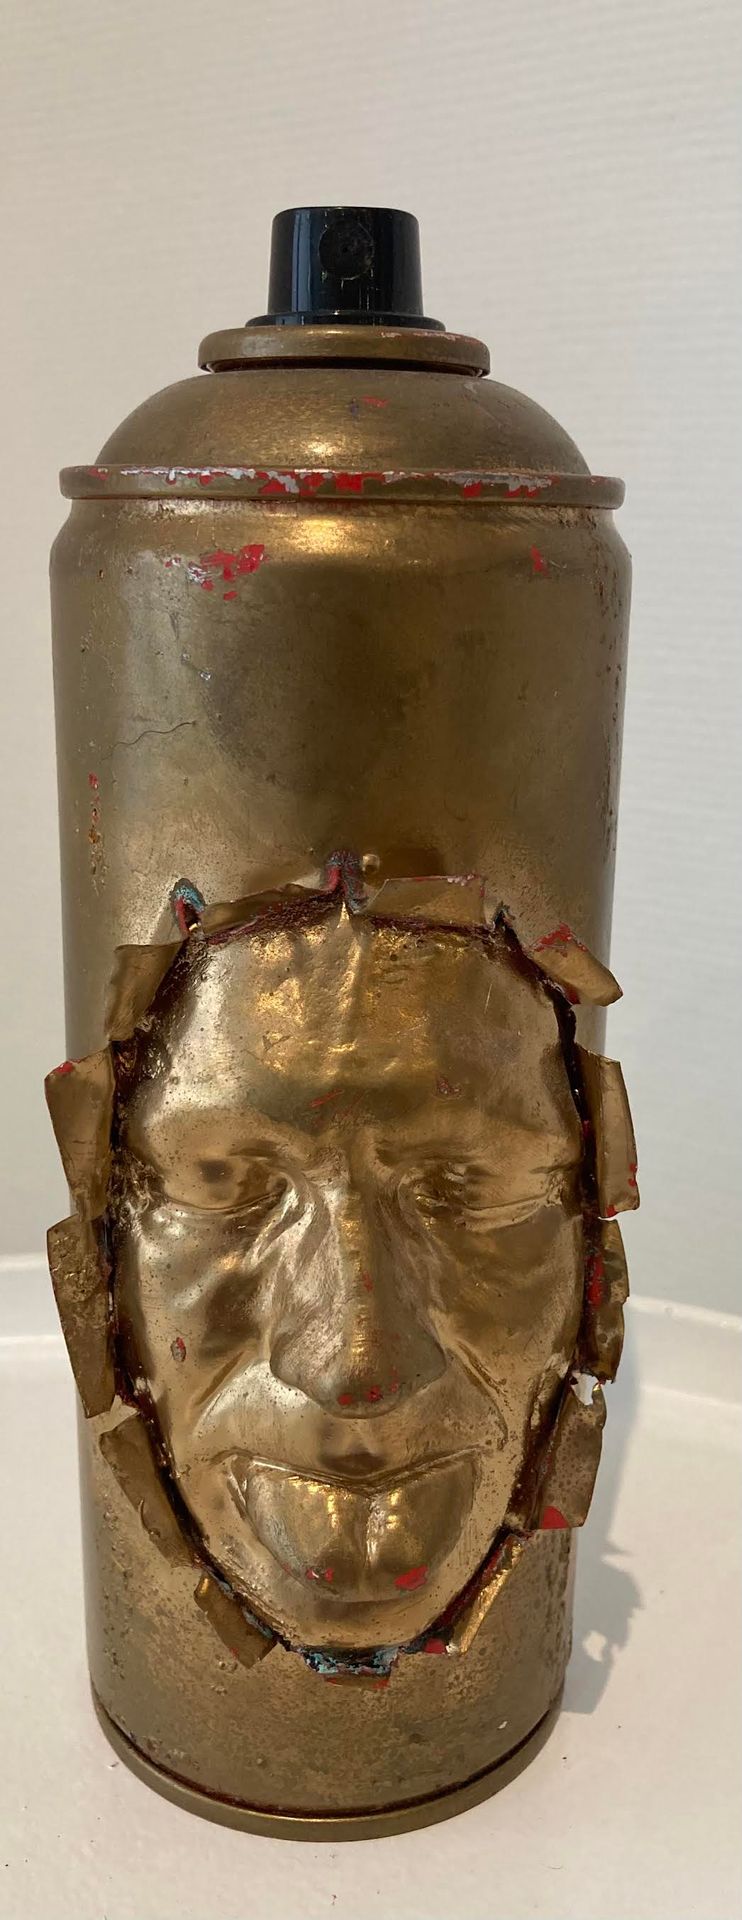 Gregos (ne en 1972) 带有艺术家面孔的绘画雕塑生物体

混合媒体：石膏、金属和丙烯酸树脂

高20厘米